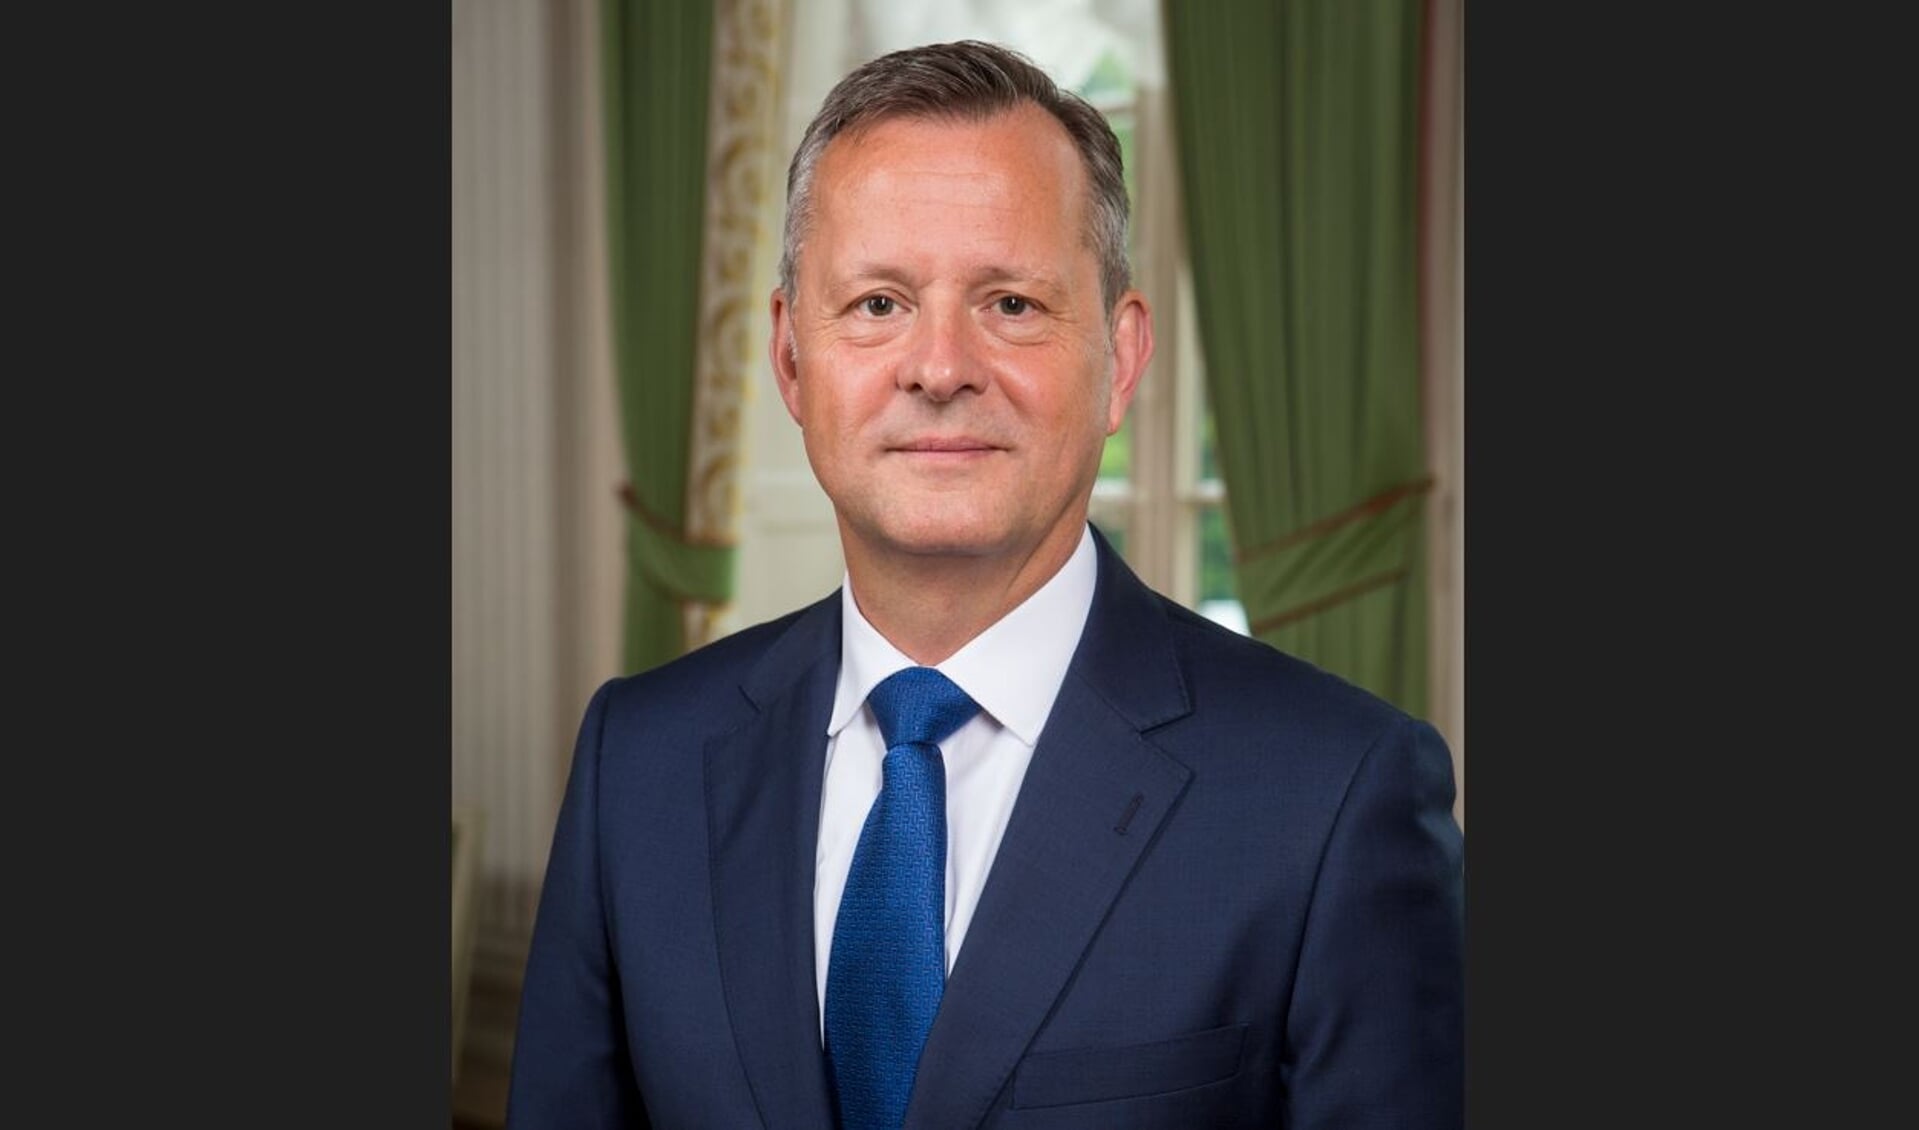 Arthur van Dijk, commissaris van de Koning in Noord-Holland.